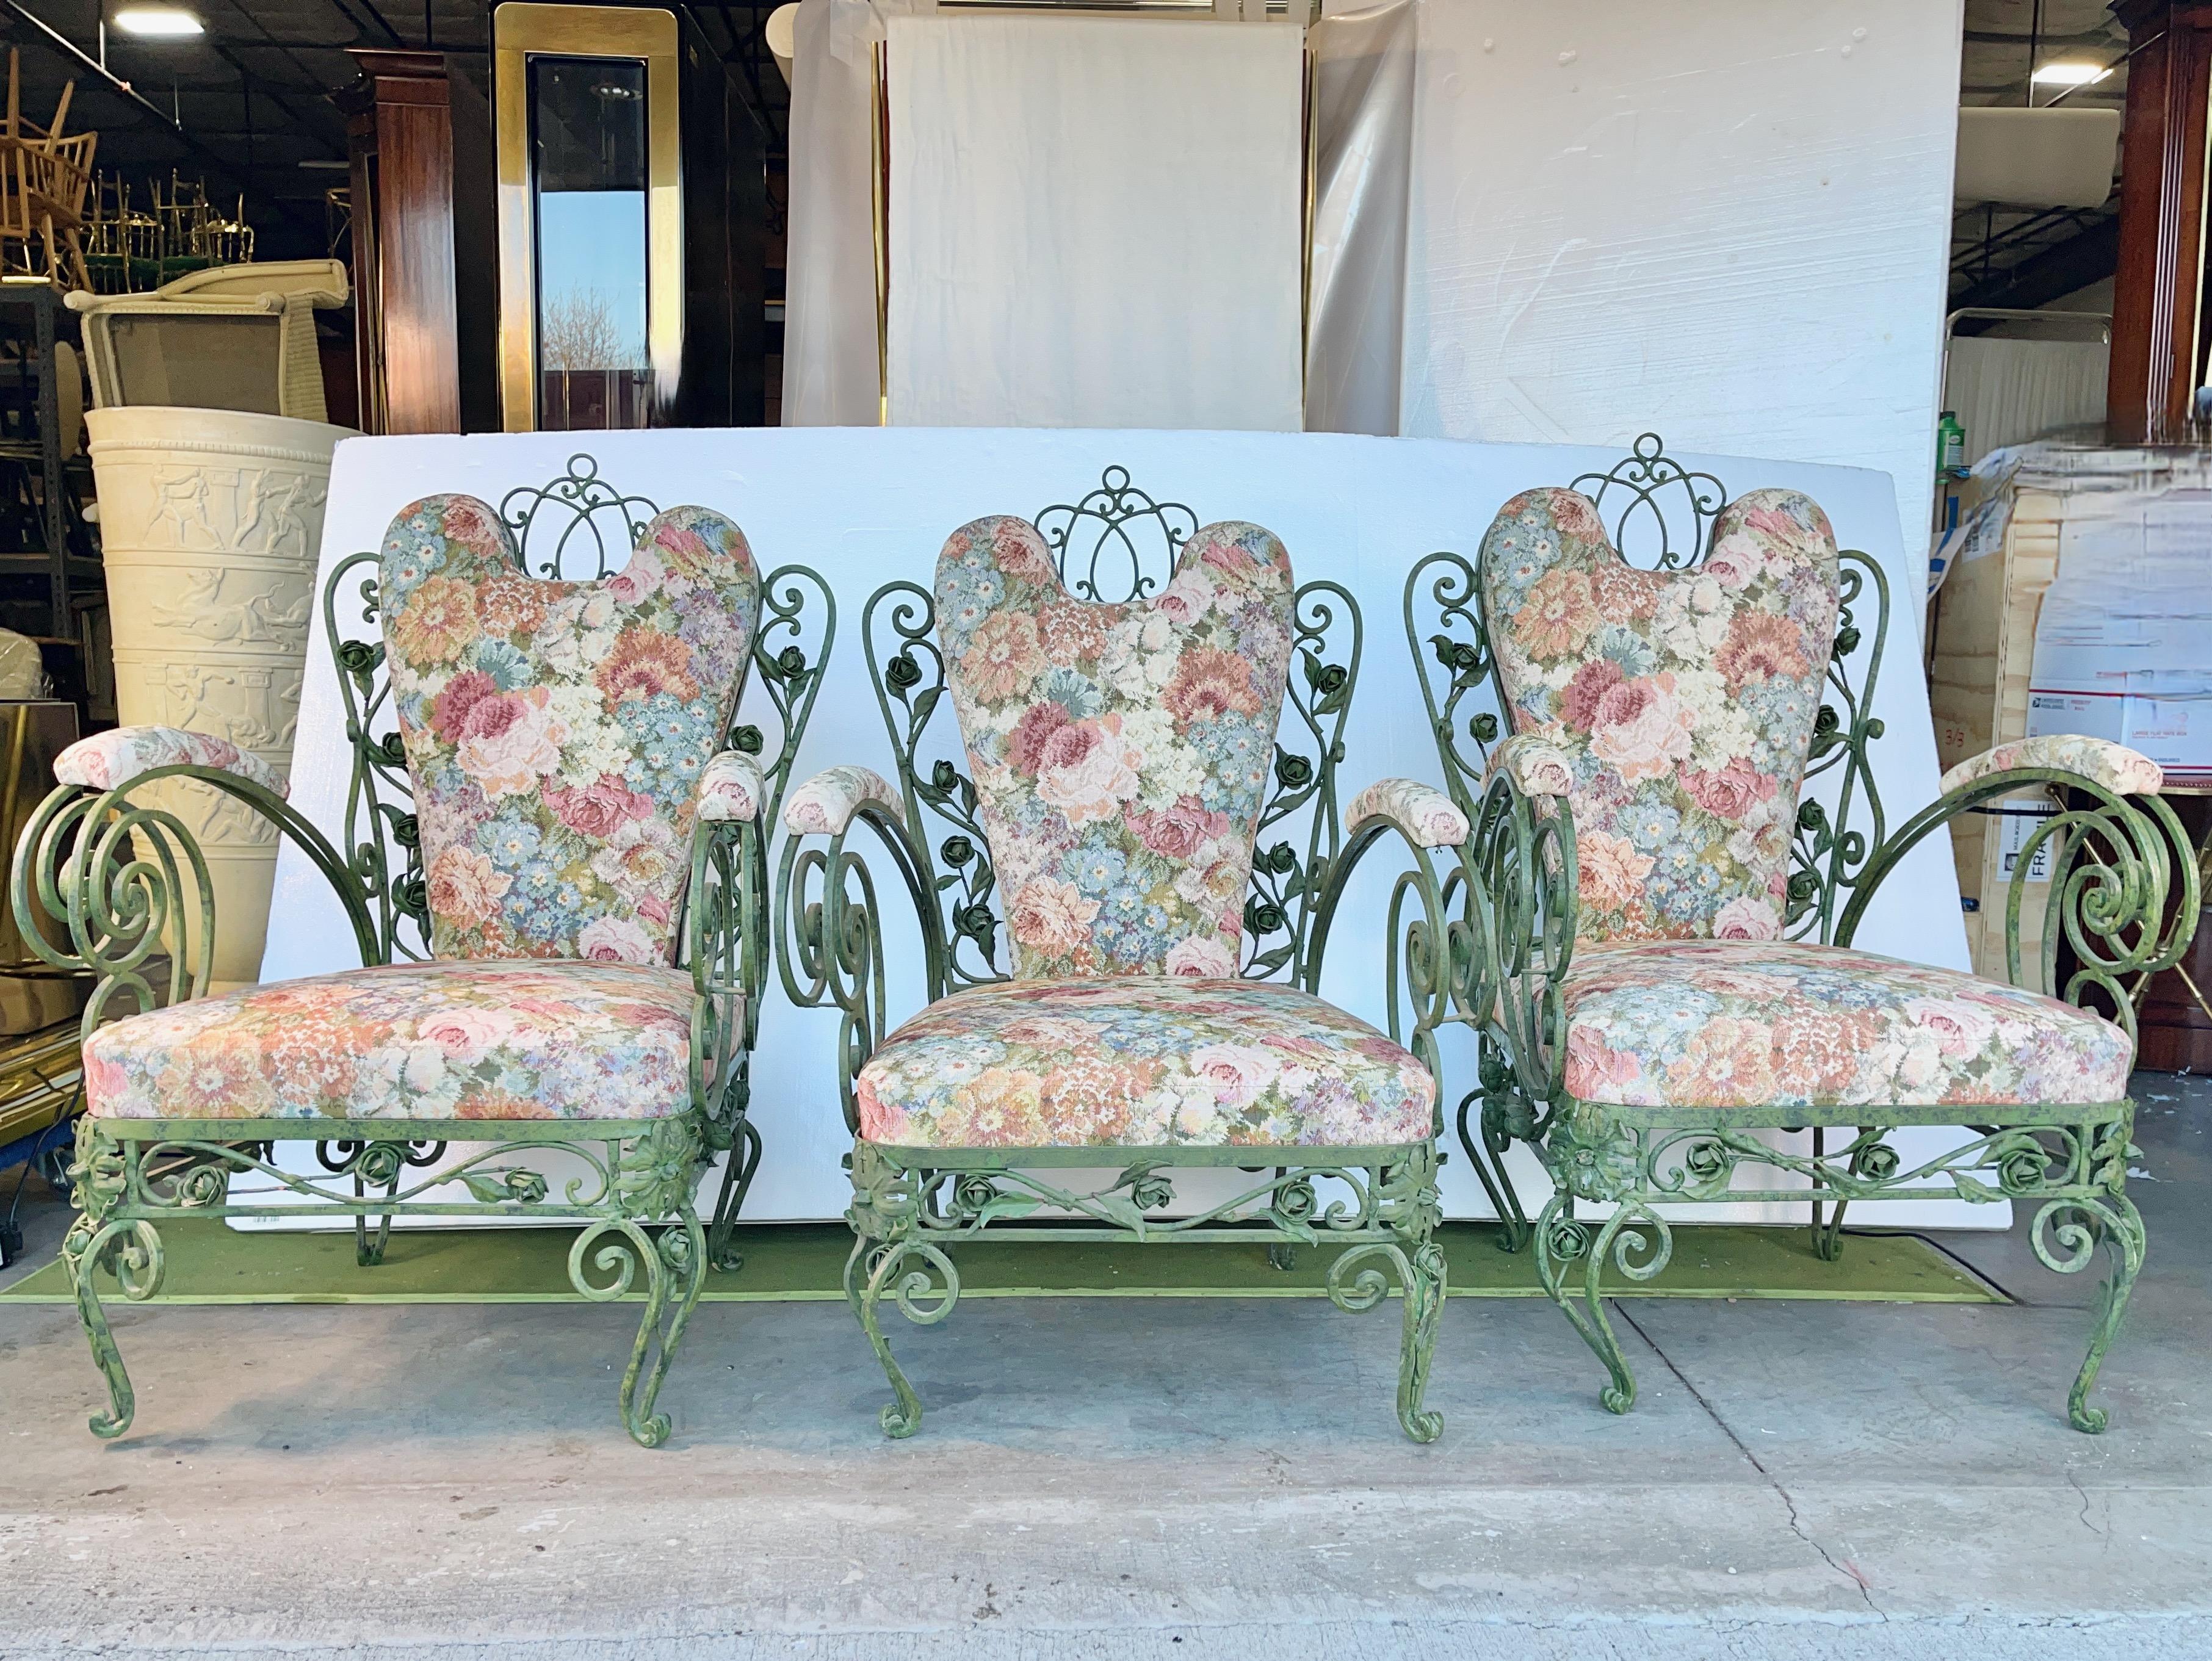 Trois chaises de patio surdimensionnées en fer forgé italien avec assise, dossier et pad d'accoudoir rembourrés. 
Remarquez les boutons de rose, les tiges et les feuilles en fer parmi les rouleaux en fer.
Finition d'origine en émail cuit vert